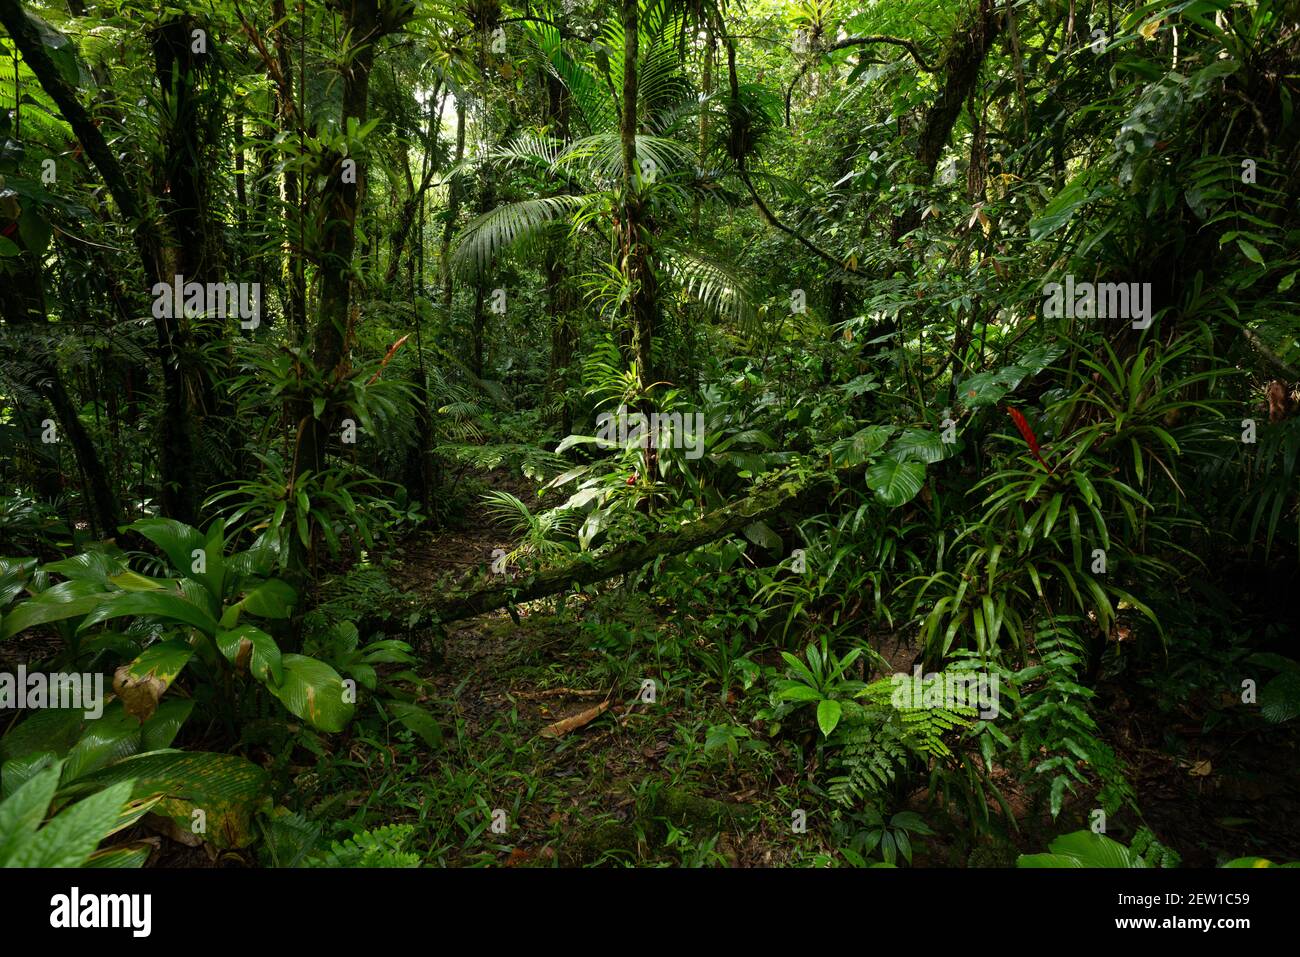 Lush vegetation inside the Atlantic Rainforest of SE Brazil Stock Photo